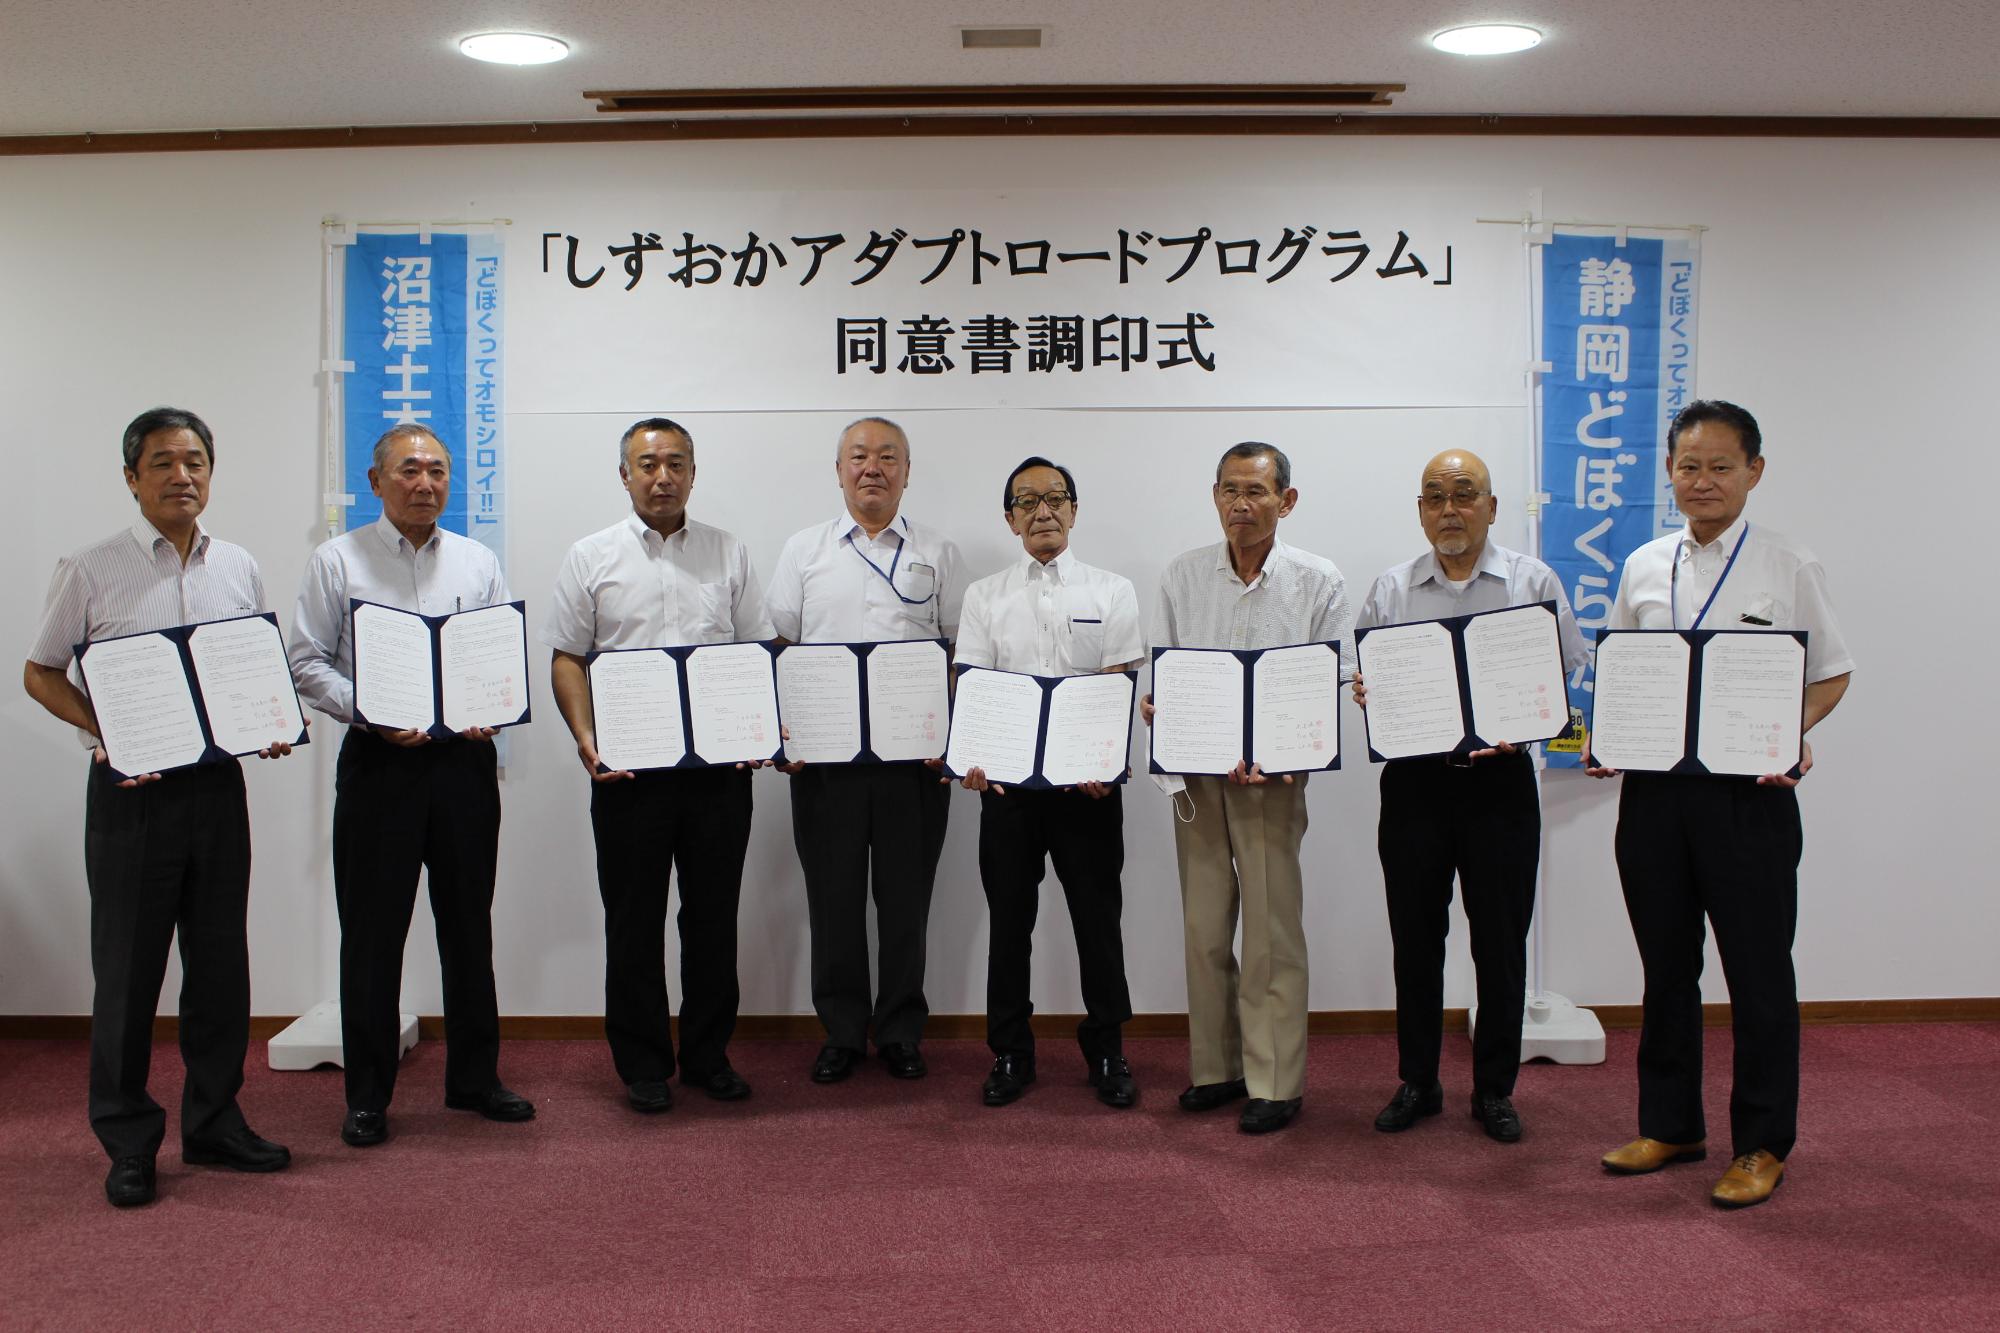 男性8名が横一列に並び、6団体が同意書を持って記念撮影をしている写真